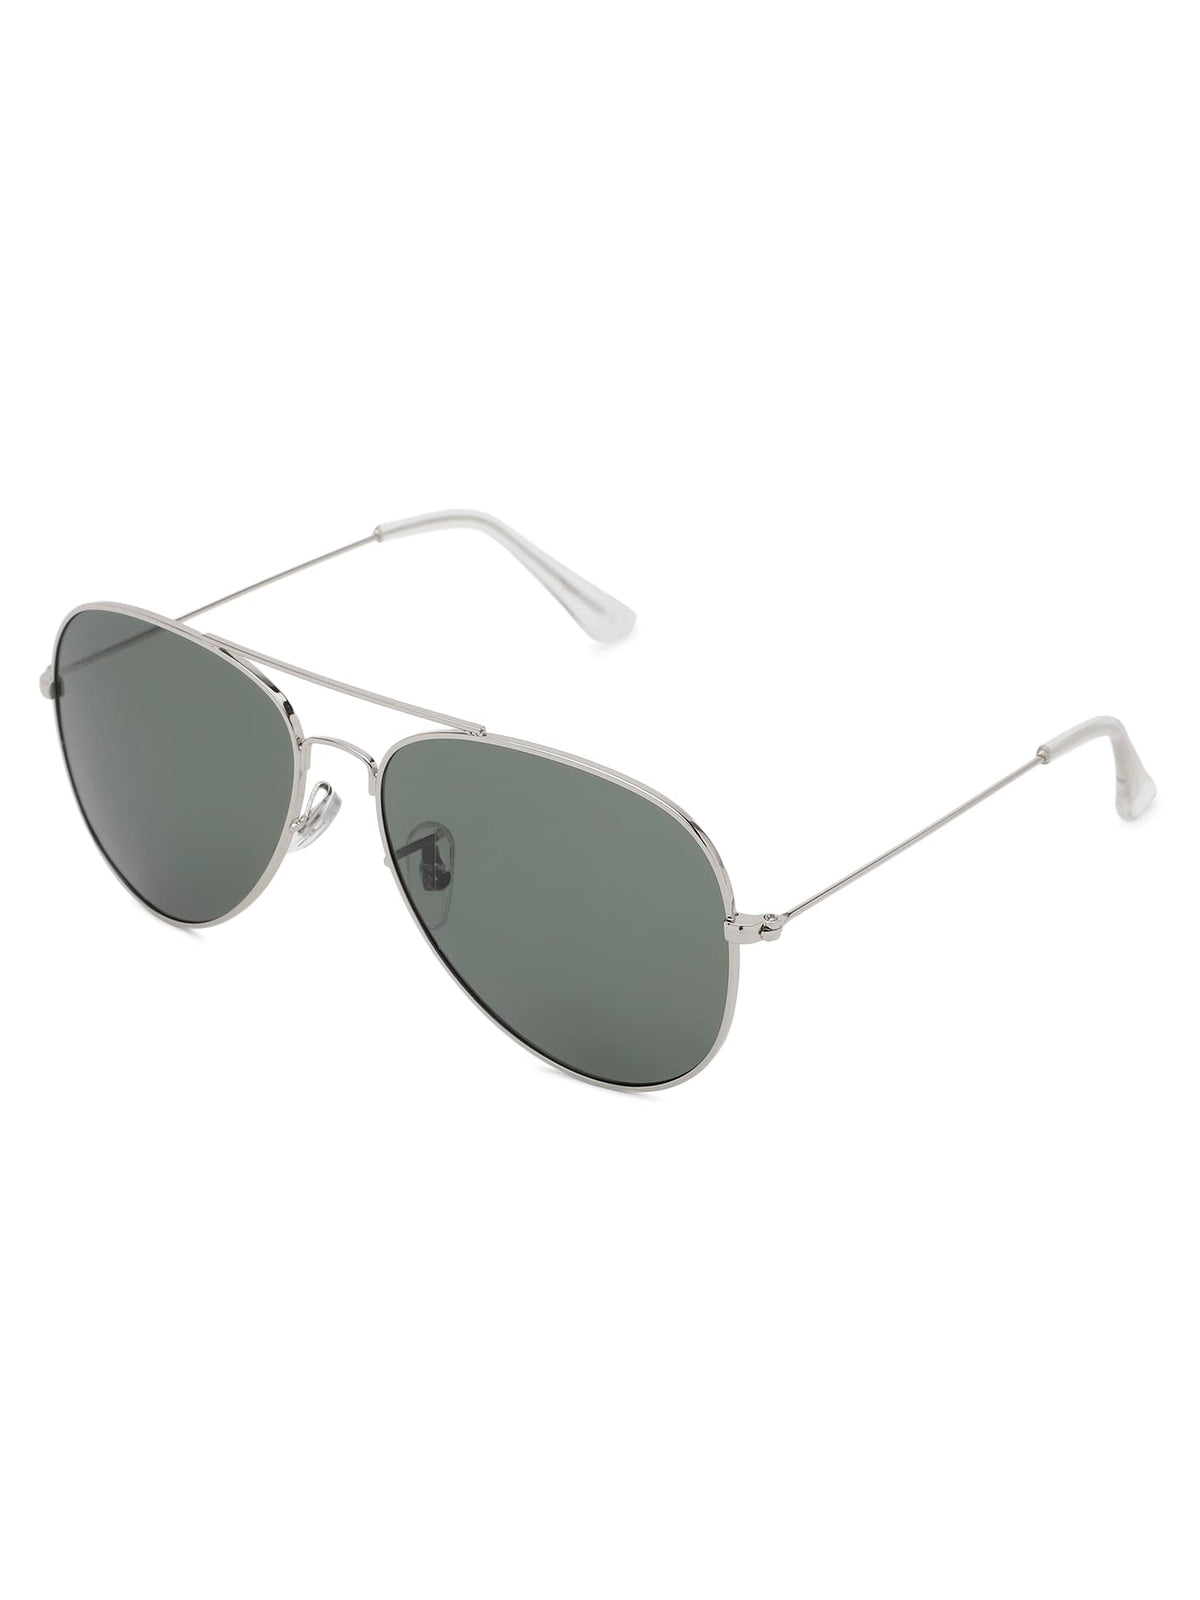 Intellilens Aviator Polarized & UV Protected Sunglasses For Men & Women | Goggles for Men & Women (Silver & Green) (59-21-131) - Pack of 1